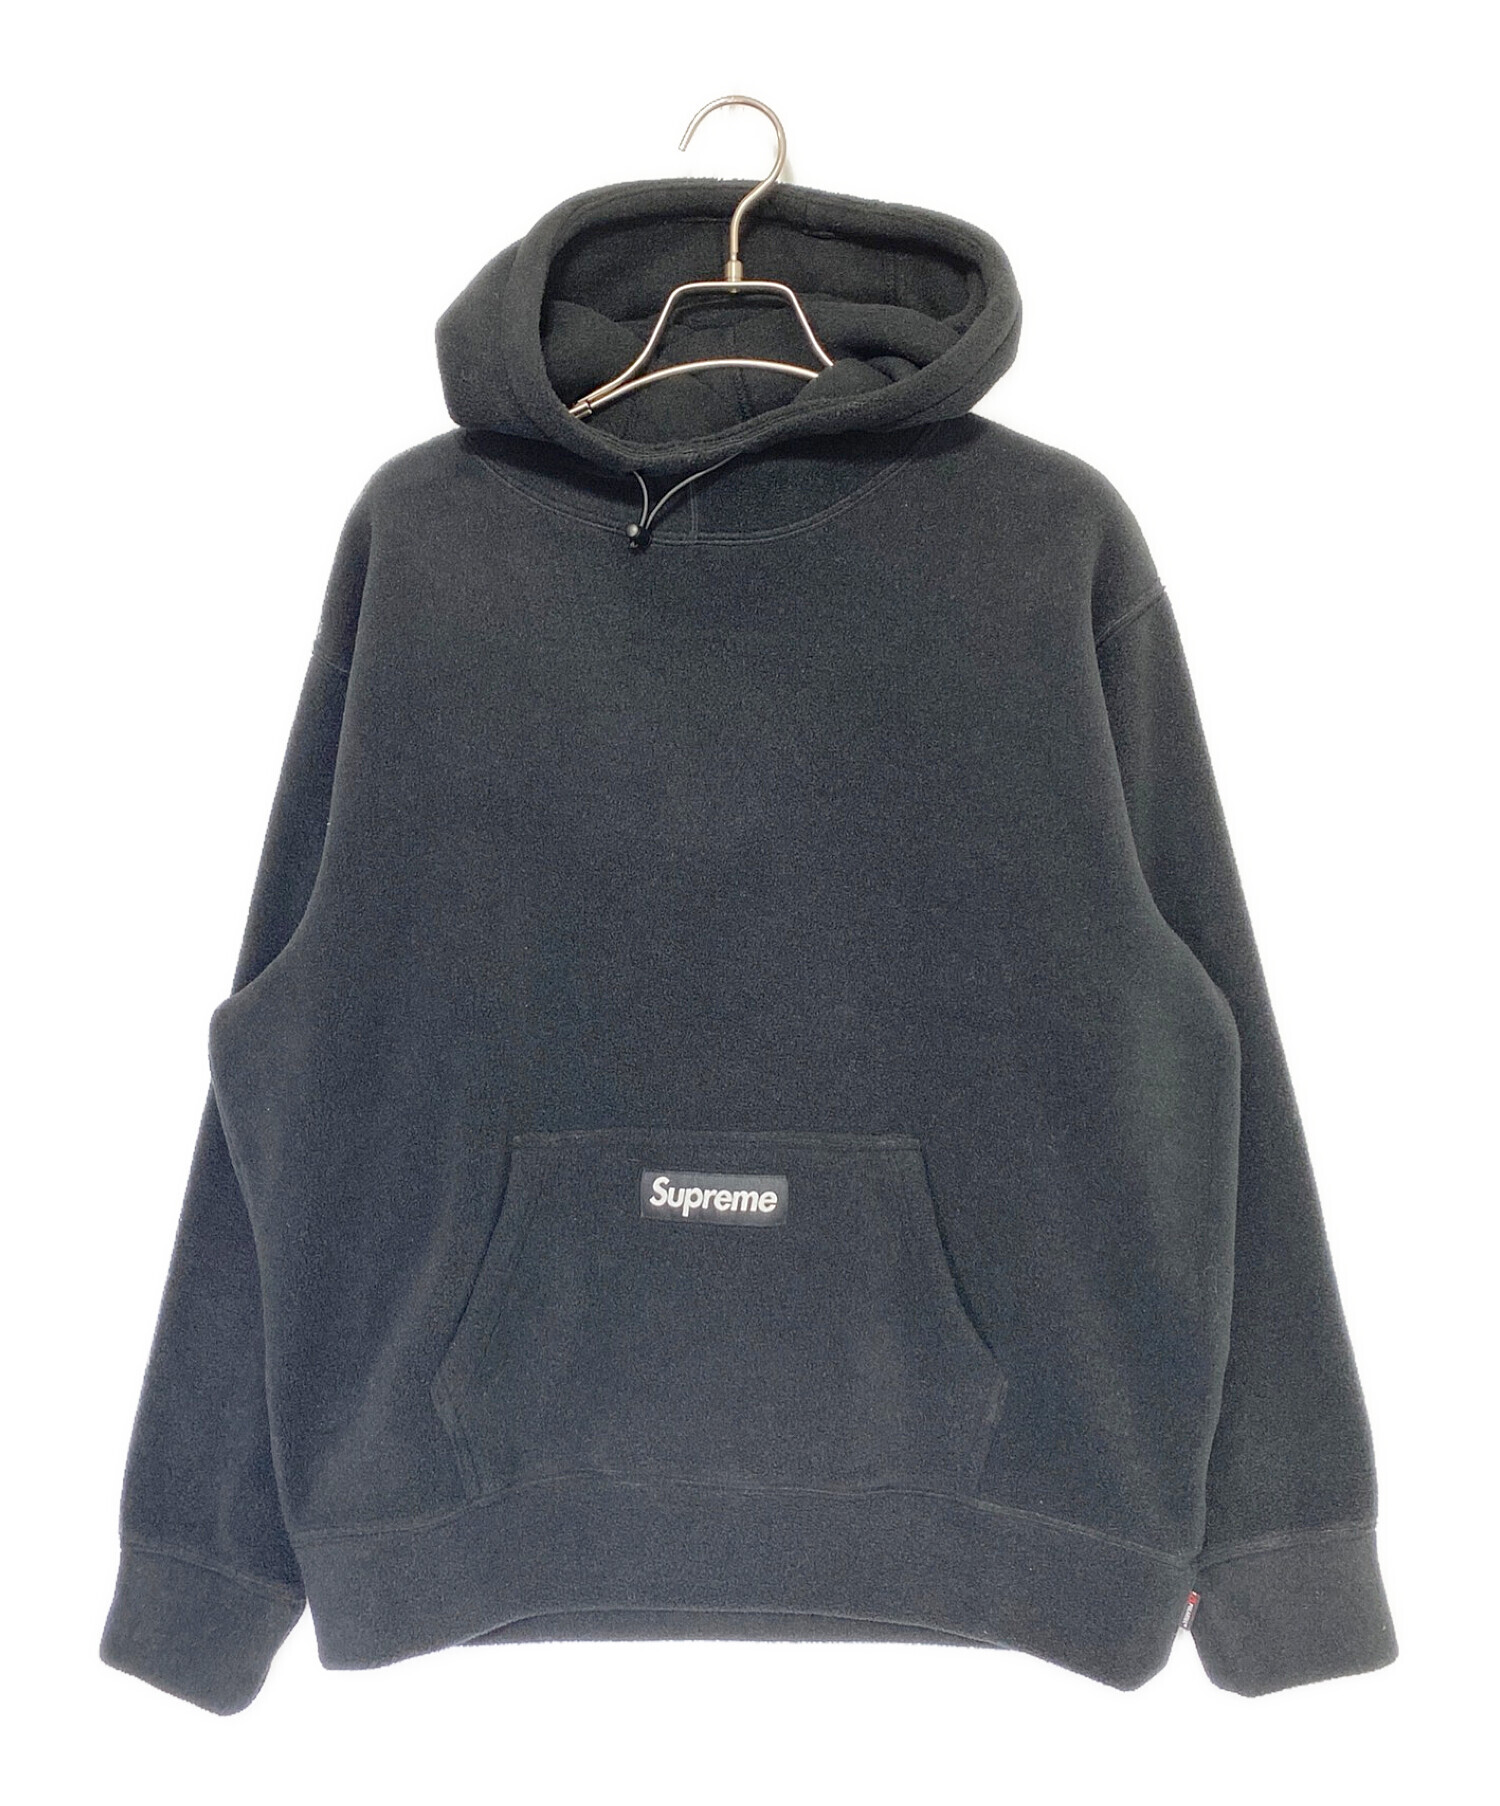 SUPREME (シュプリーム) Polartec Hooded Sweatshirt ブラック サイズ:S